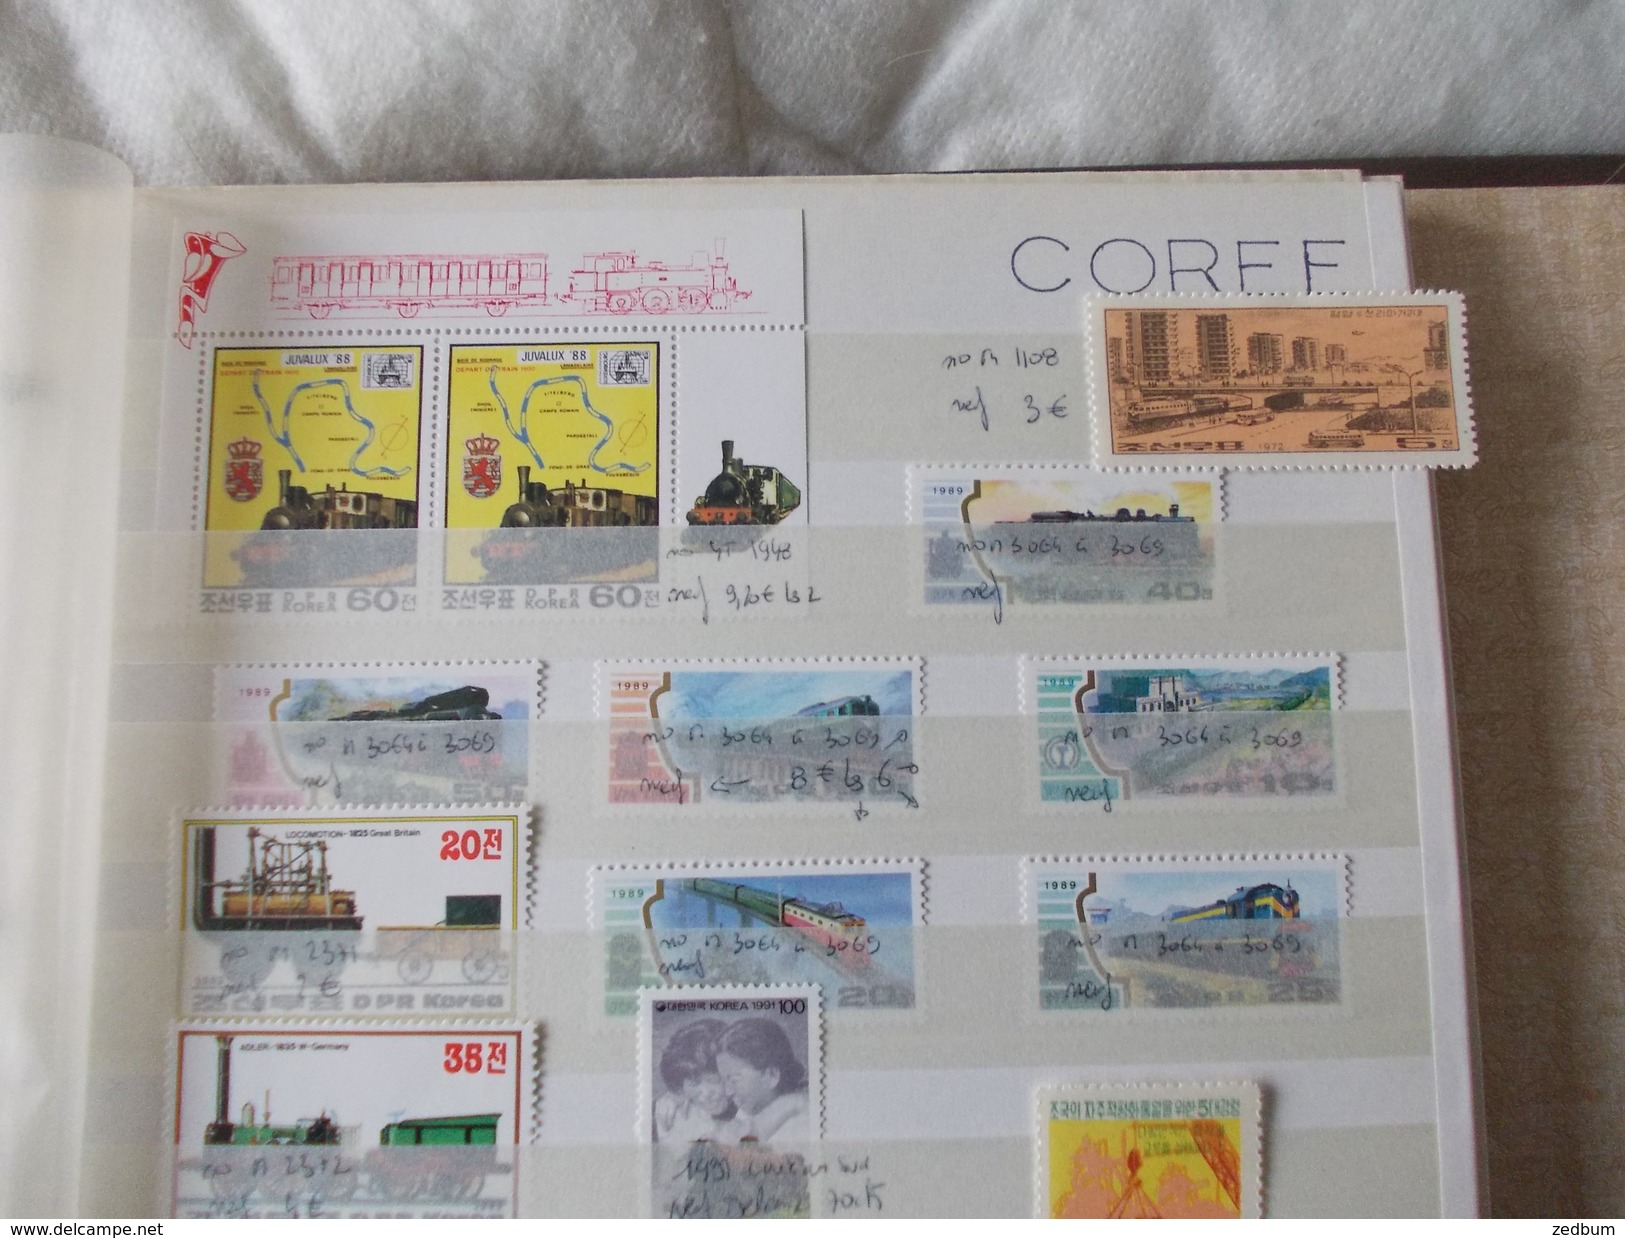 ALBUM 3 collection de timbres avec pour thème le chemin de fer train de tout pays valeur 394.10 &euro;